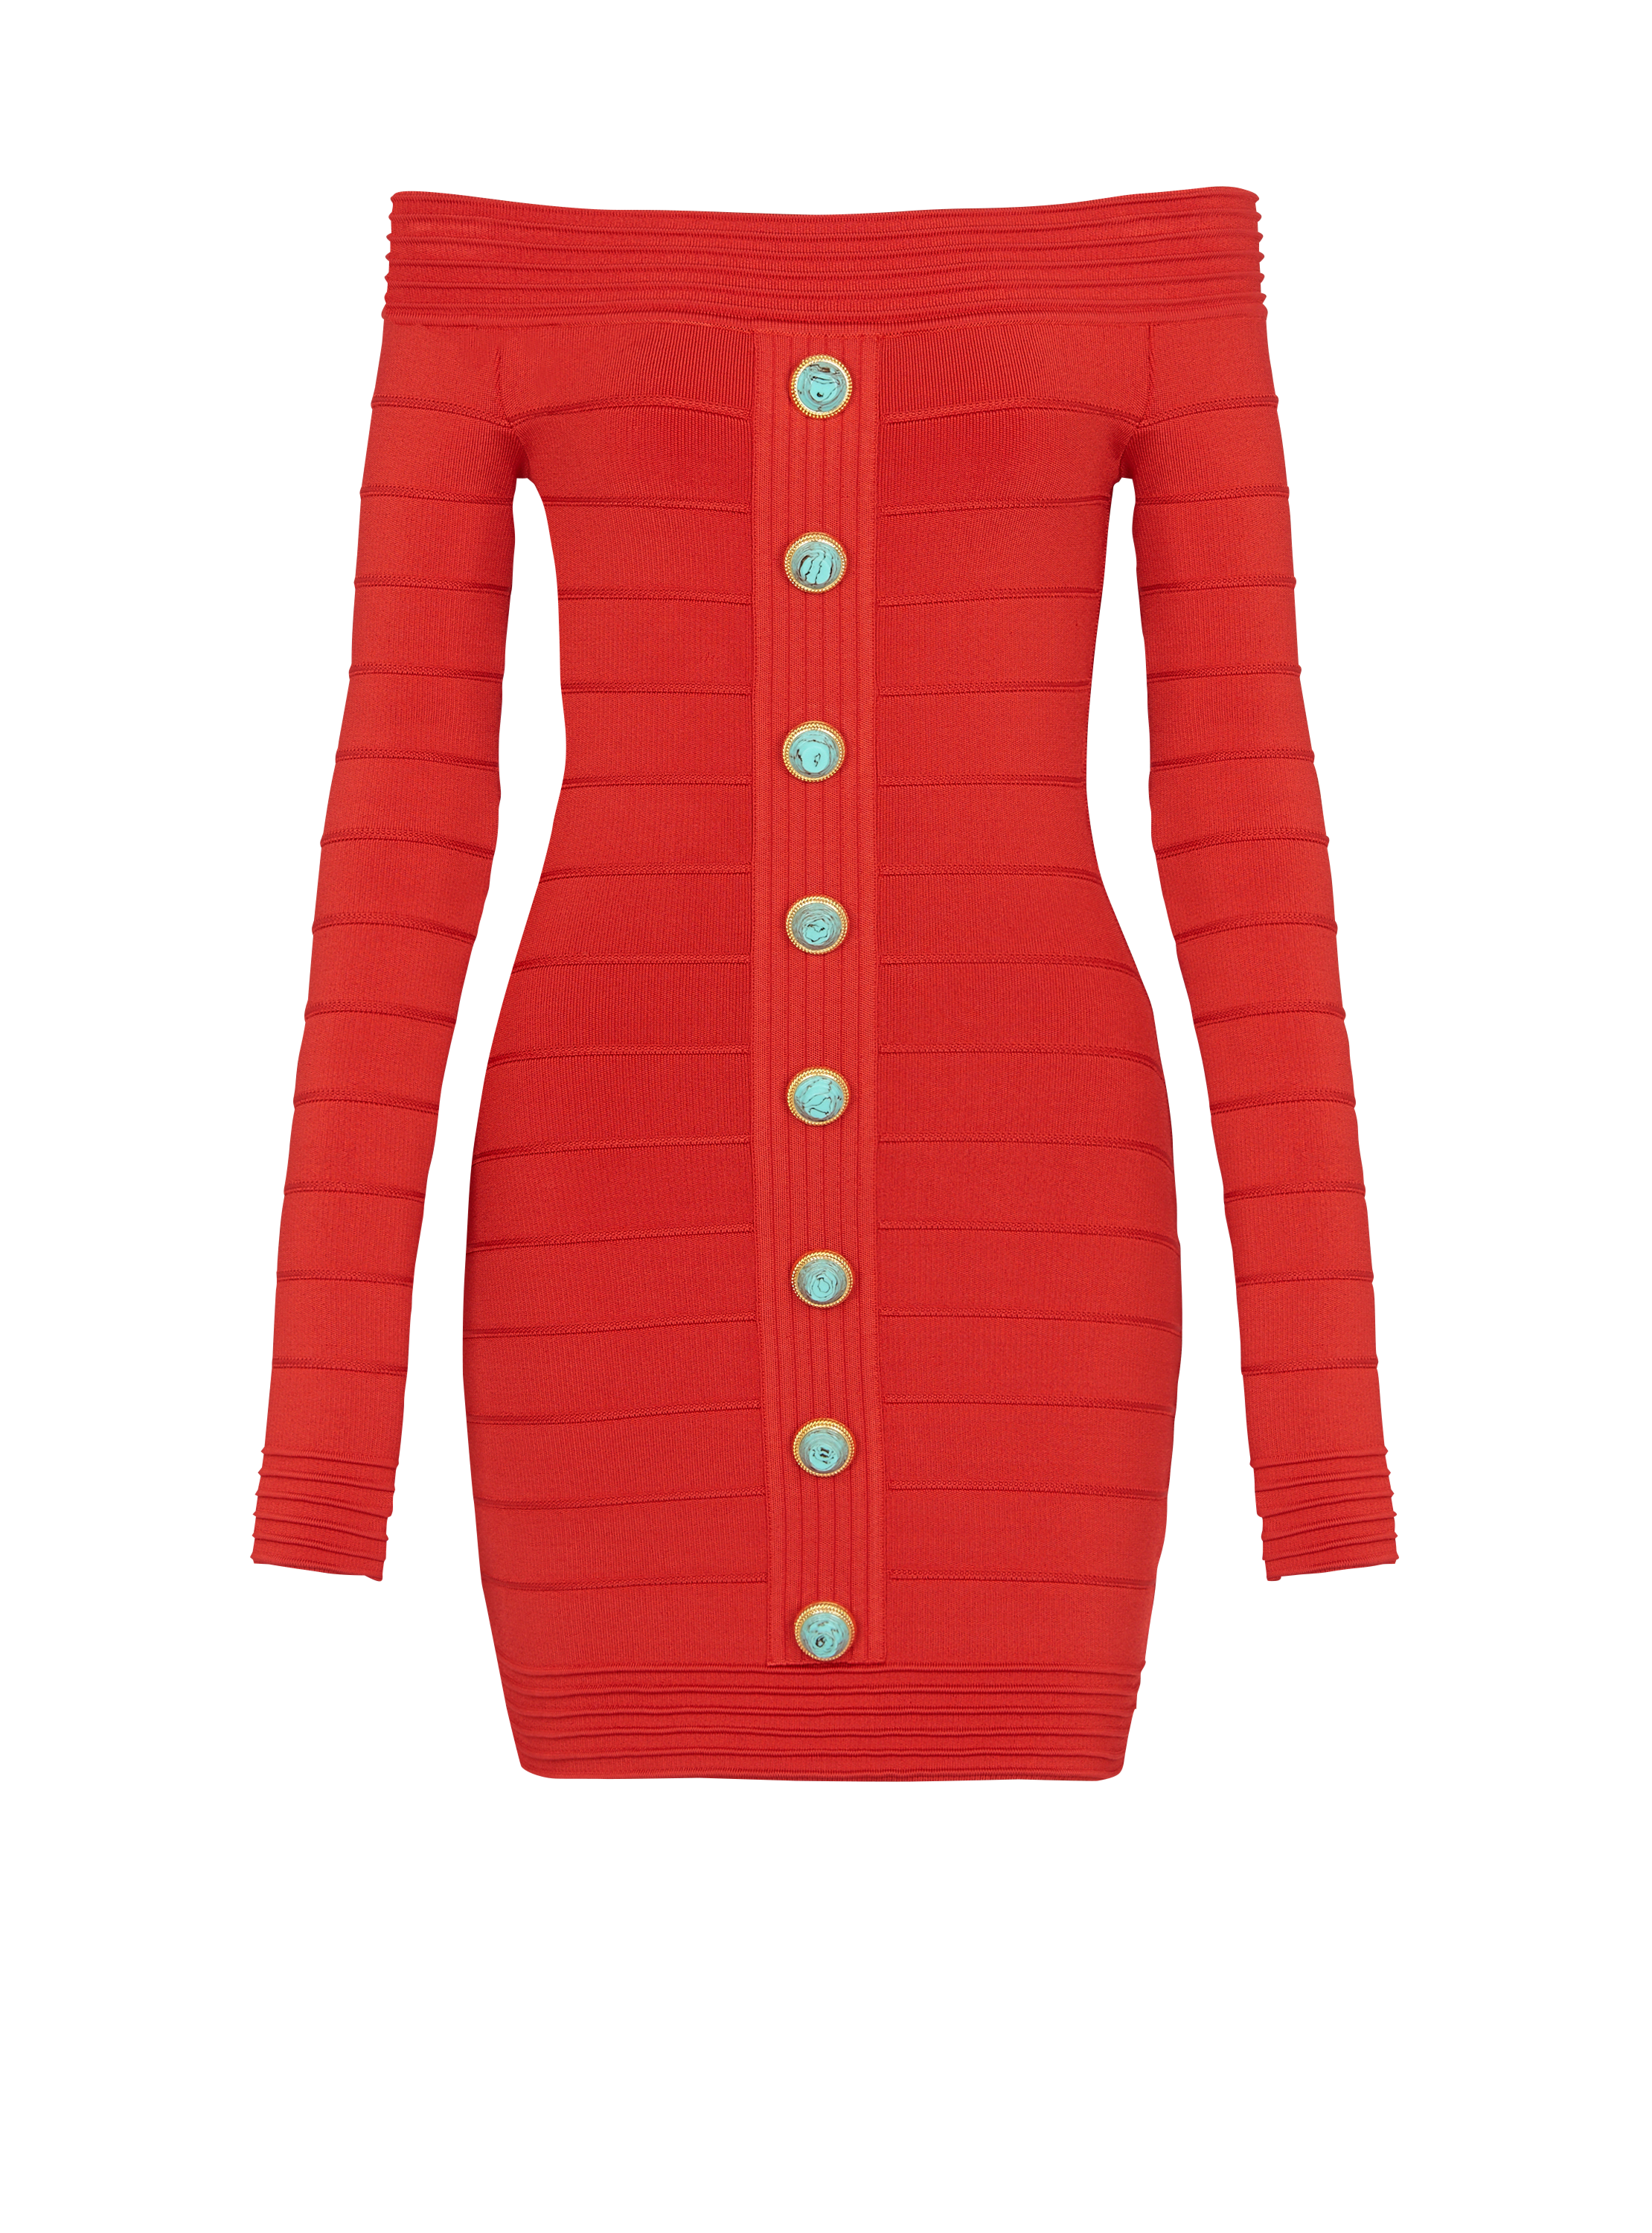 Off-the-shoulder knit dress, red, hi-res